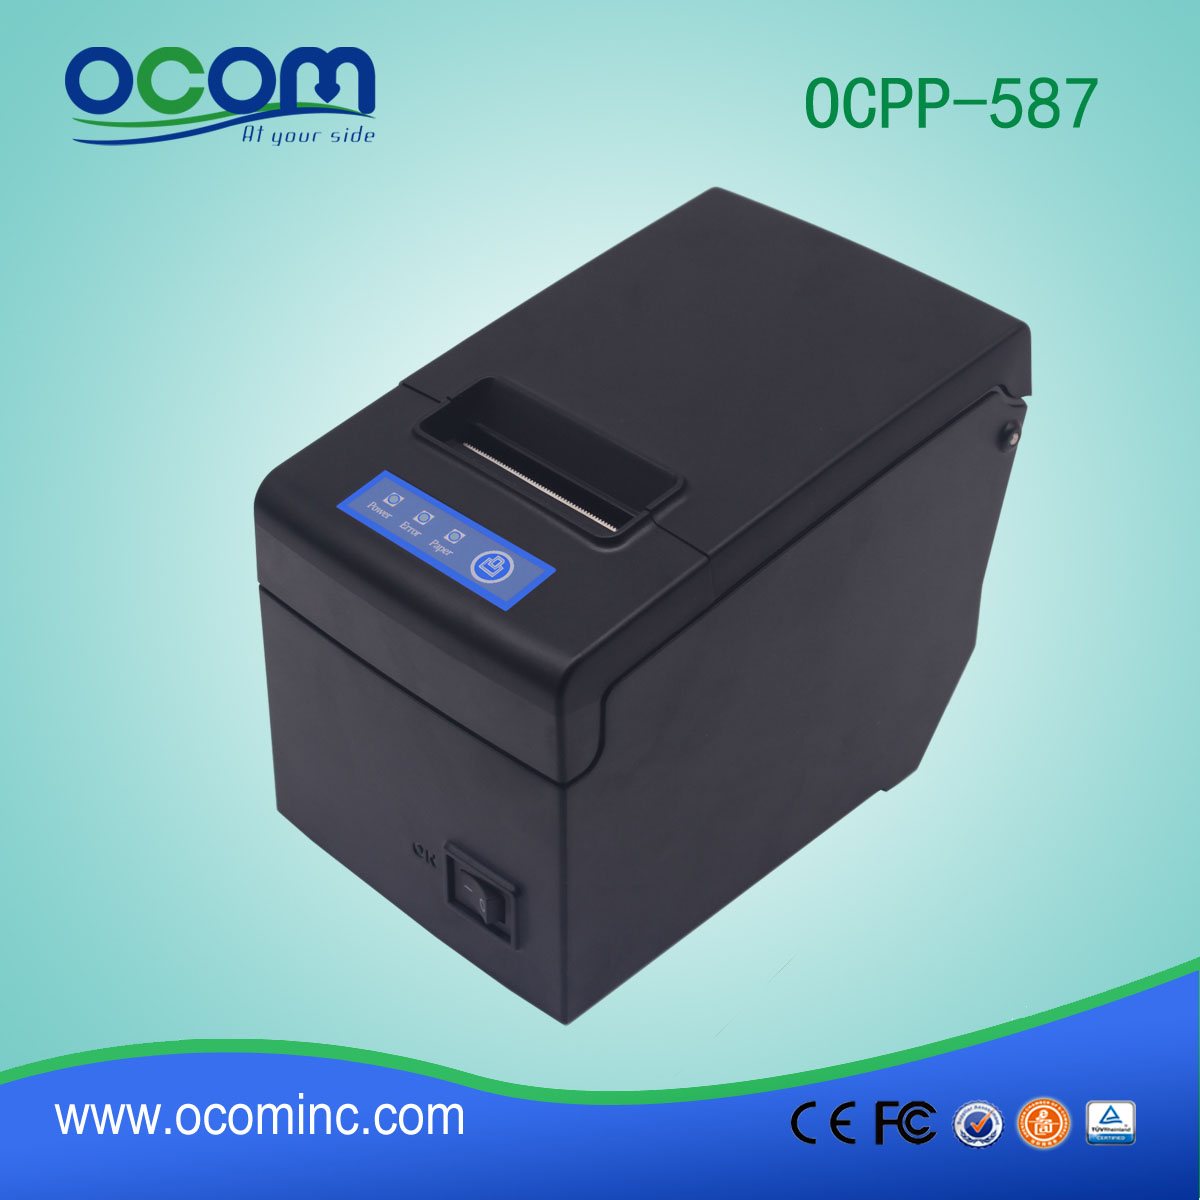 φτηνές 58 χιλιοστά θερμικό εκτυπωτή POS παραλαβή νομοσχέδιο με το μεγάλο κάτοχος χαρτί (OCPP-587)